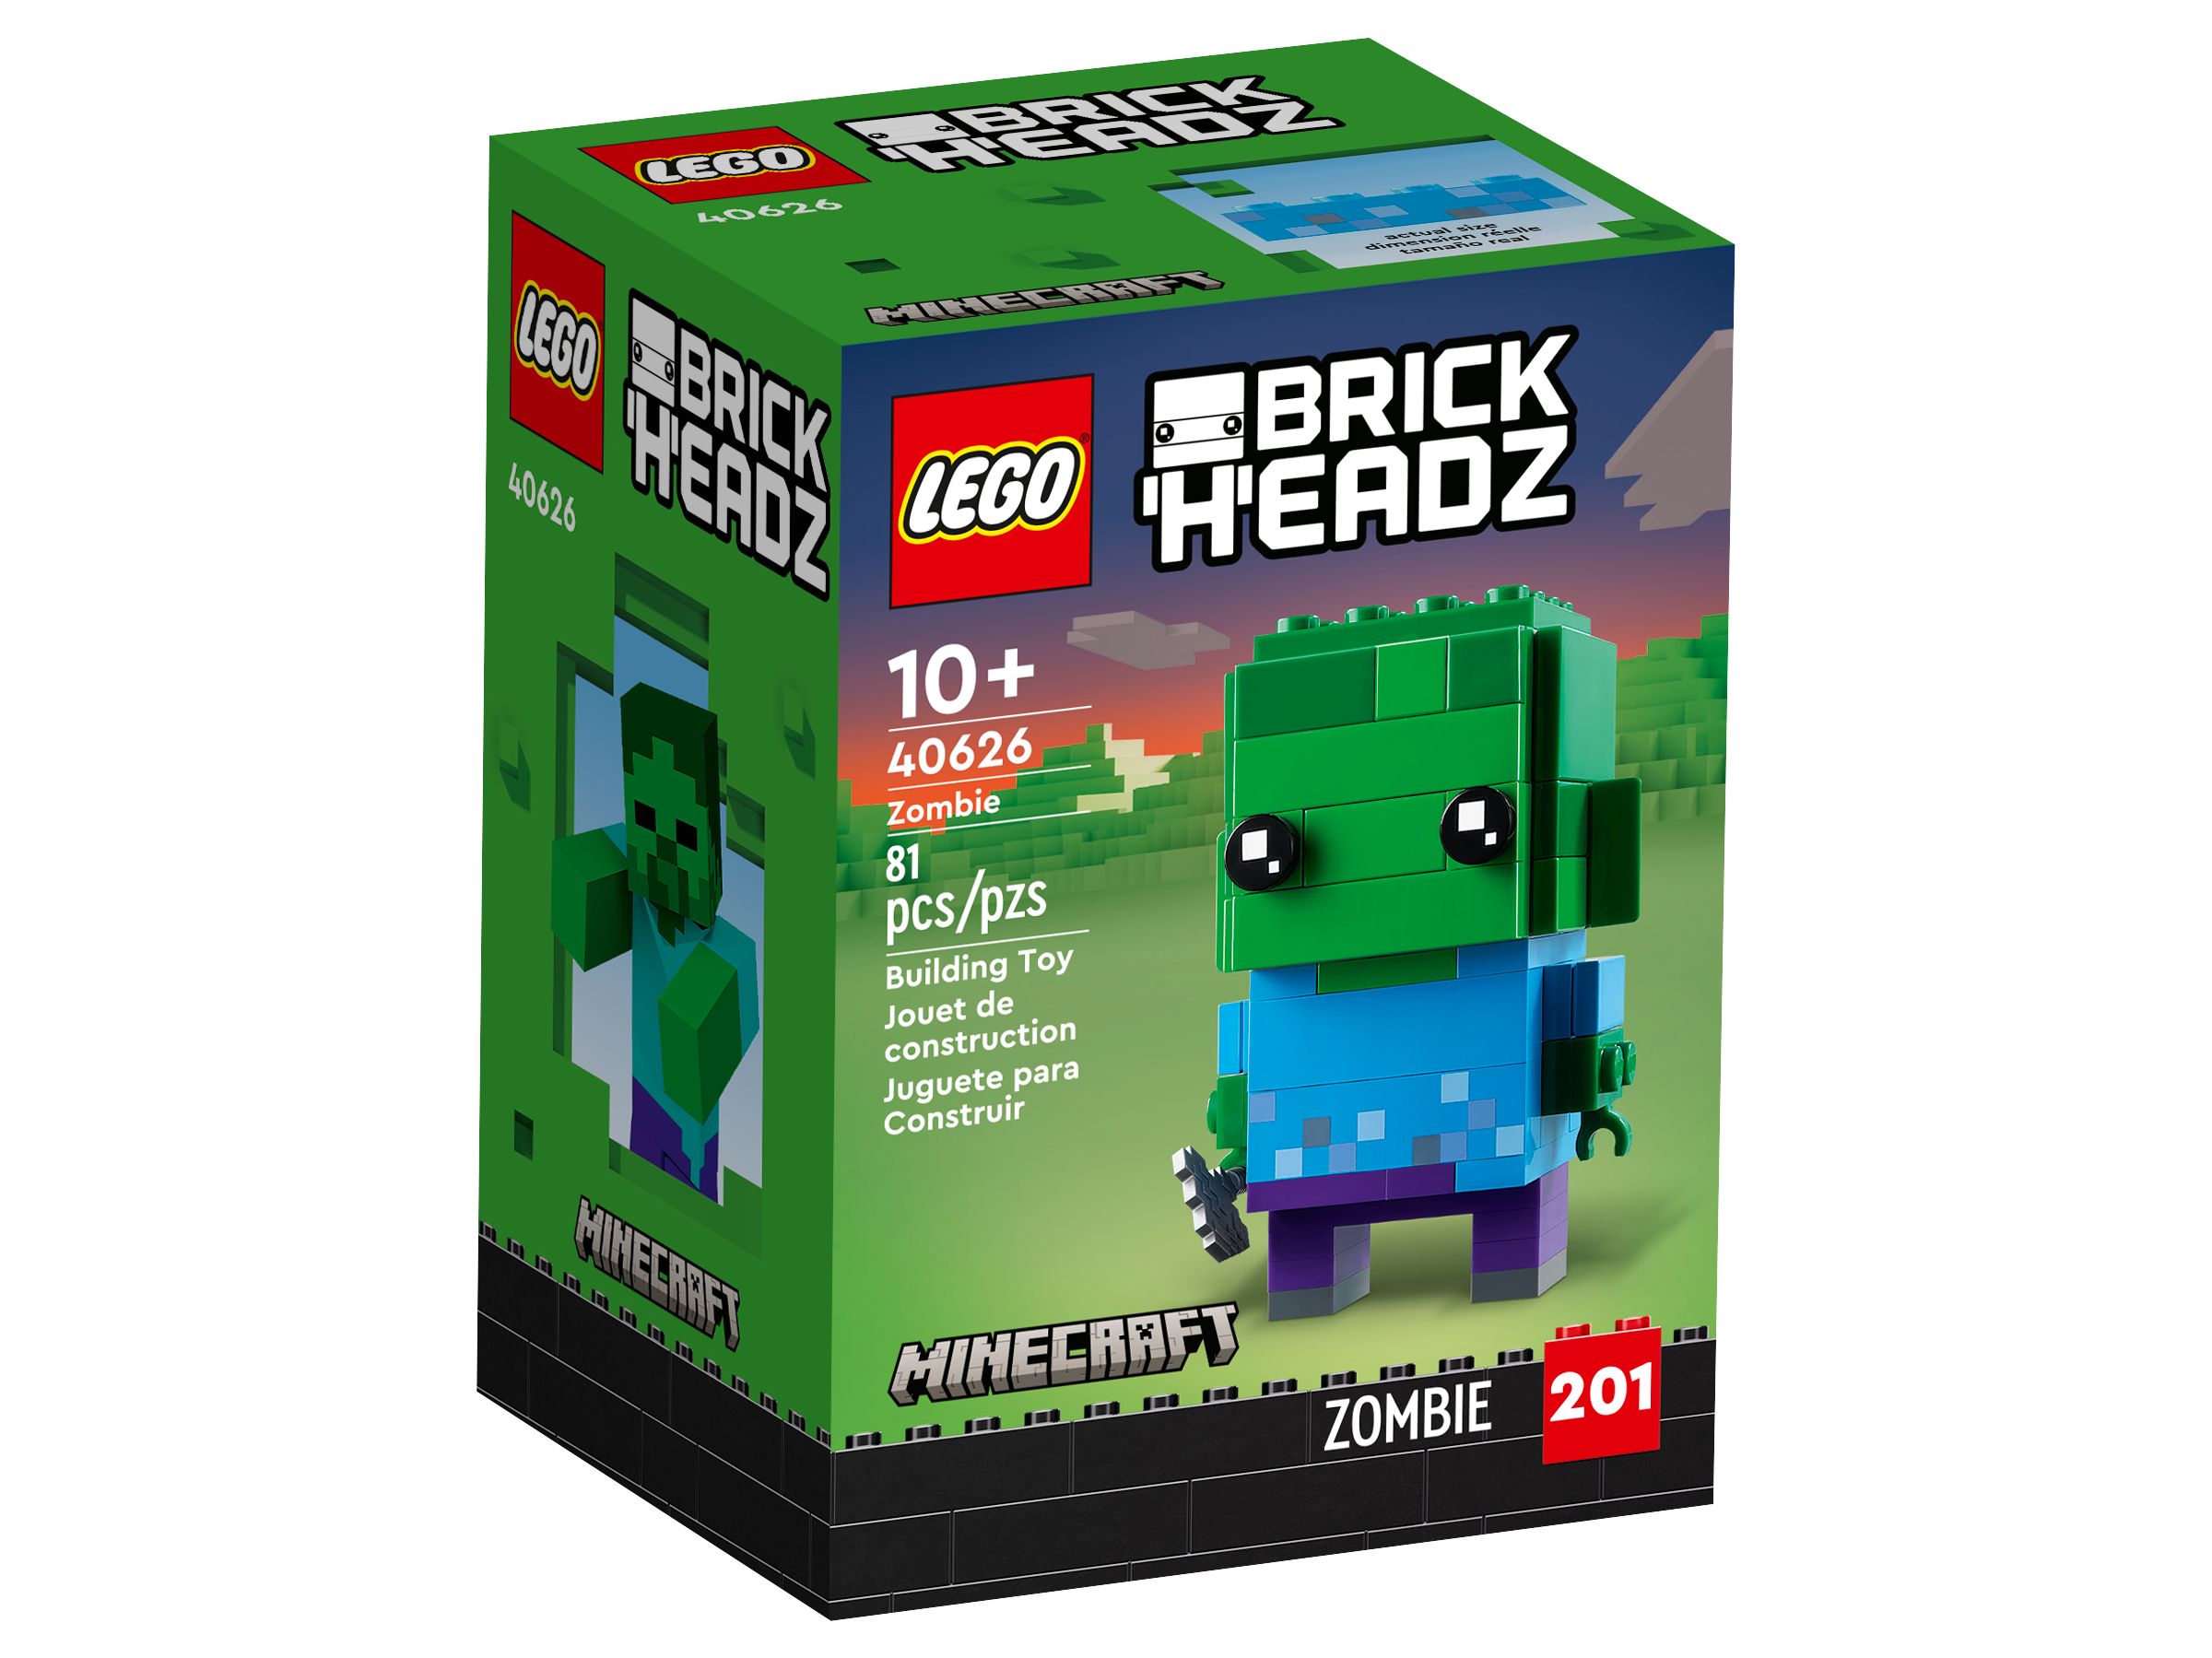 LEGO BrickHeadz 40626 Zombie LEGO_40626_alt1.jpg